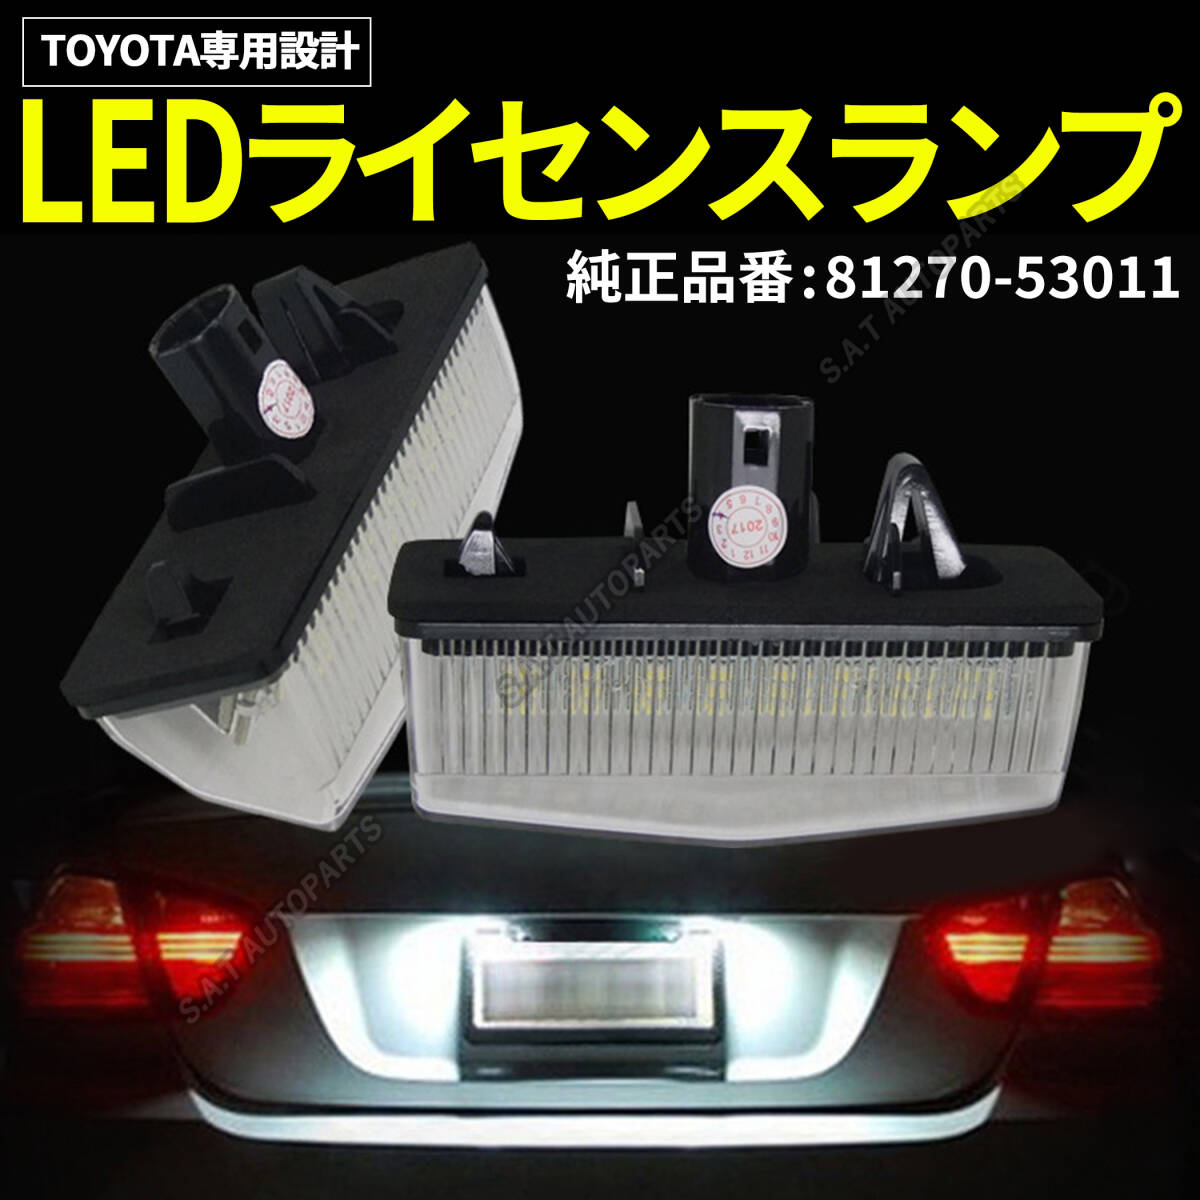 ライセンスランプ トヨタ LED ナンバー灯 左右セット 高輝度 プリウス 20系 30系 白 カプラーオン 交換タイプ ZVW35 ZVW41W ZYX10 SALEの画像1